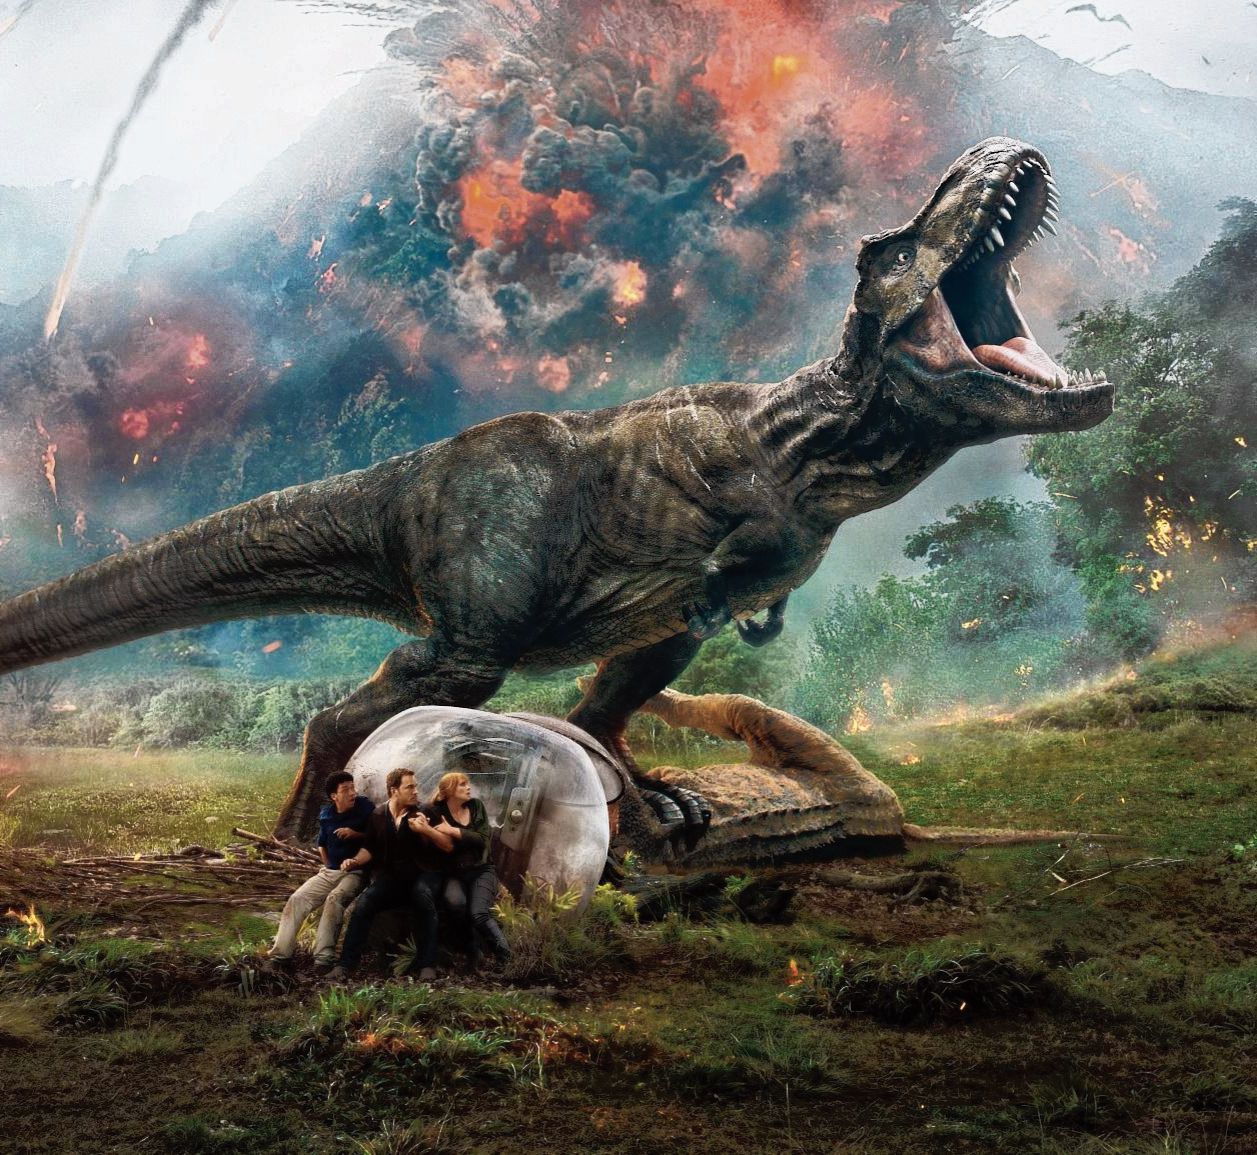 De film Jurassic World: Fallen Kingdom was vorige week de meest gepirateerde speelfilm bij de uitwisseldienst BitTorrent, aldus website TorrentFreak.